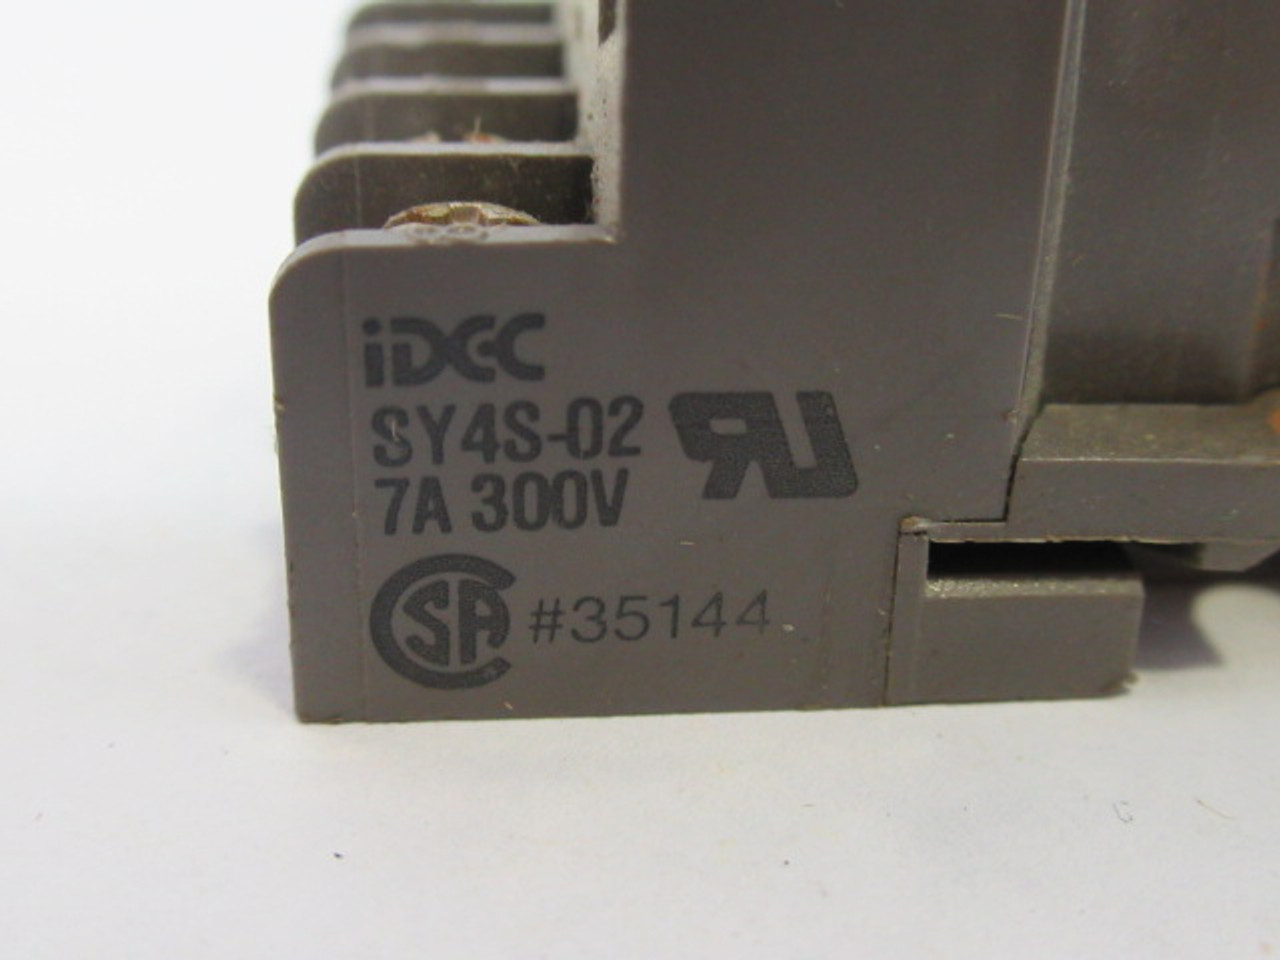 IDEC SY4S-02 Relay Socket 7A 300V 14-Blade USED